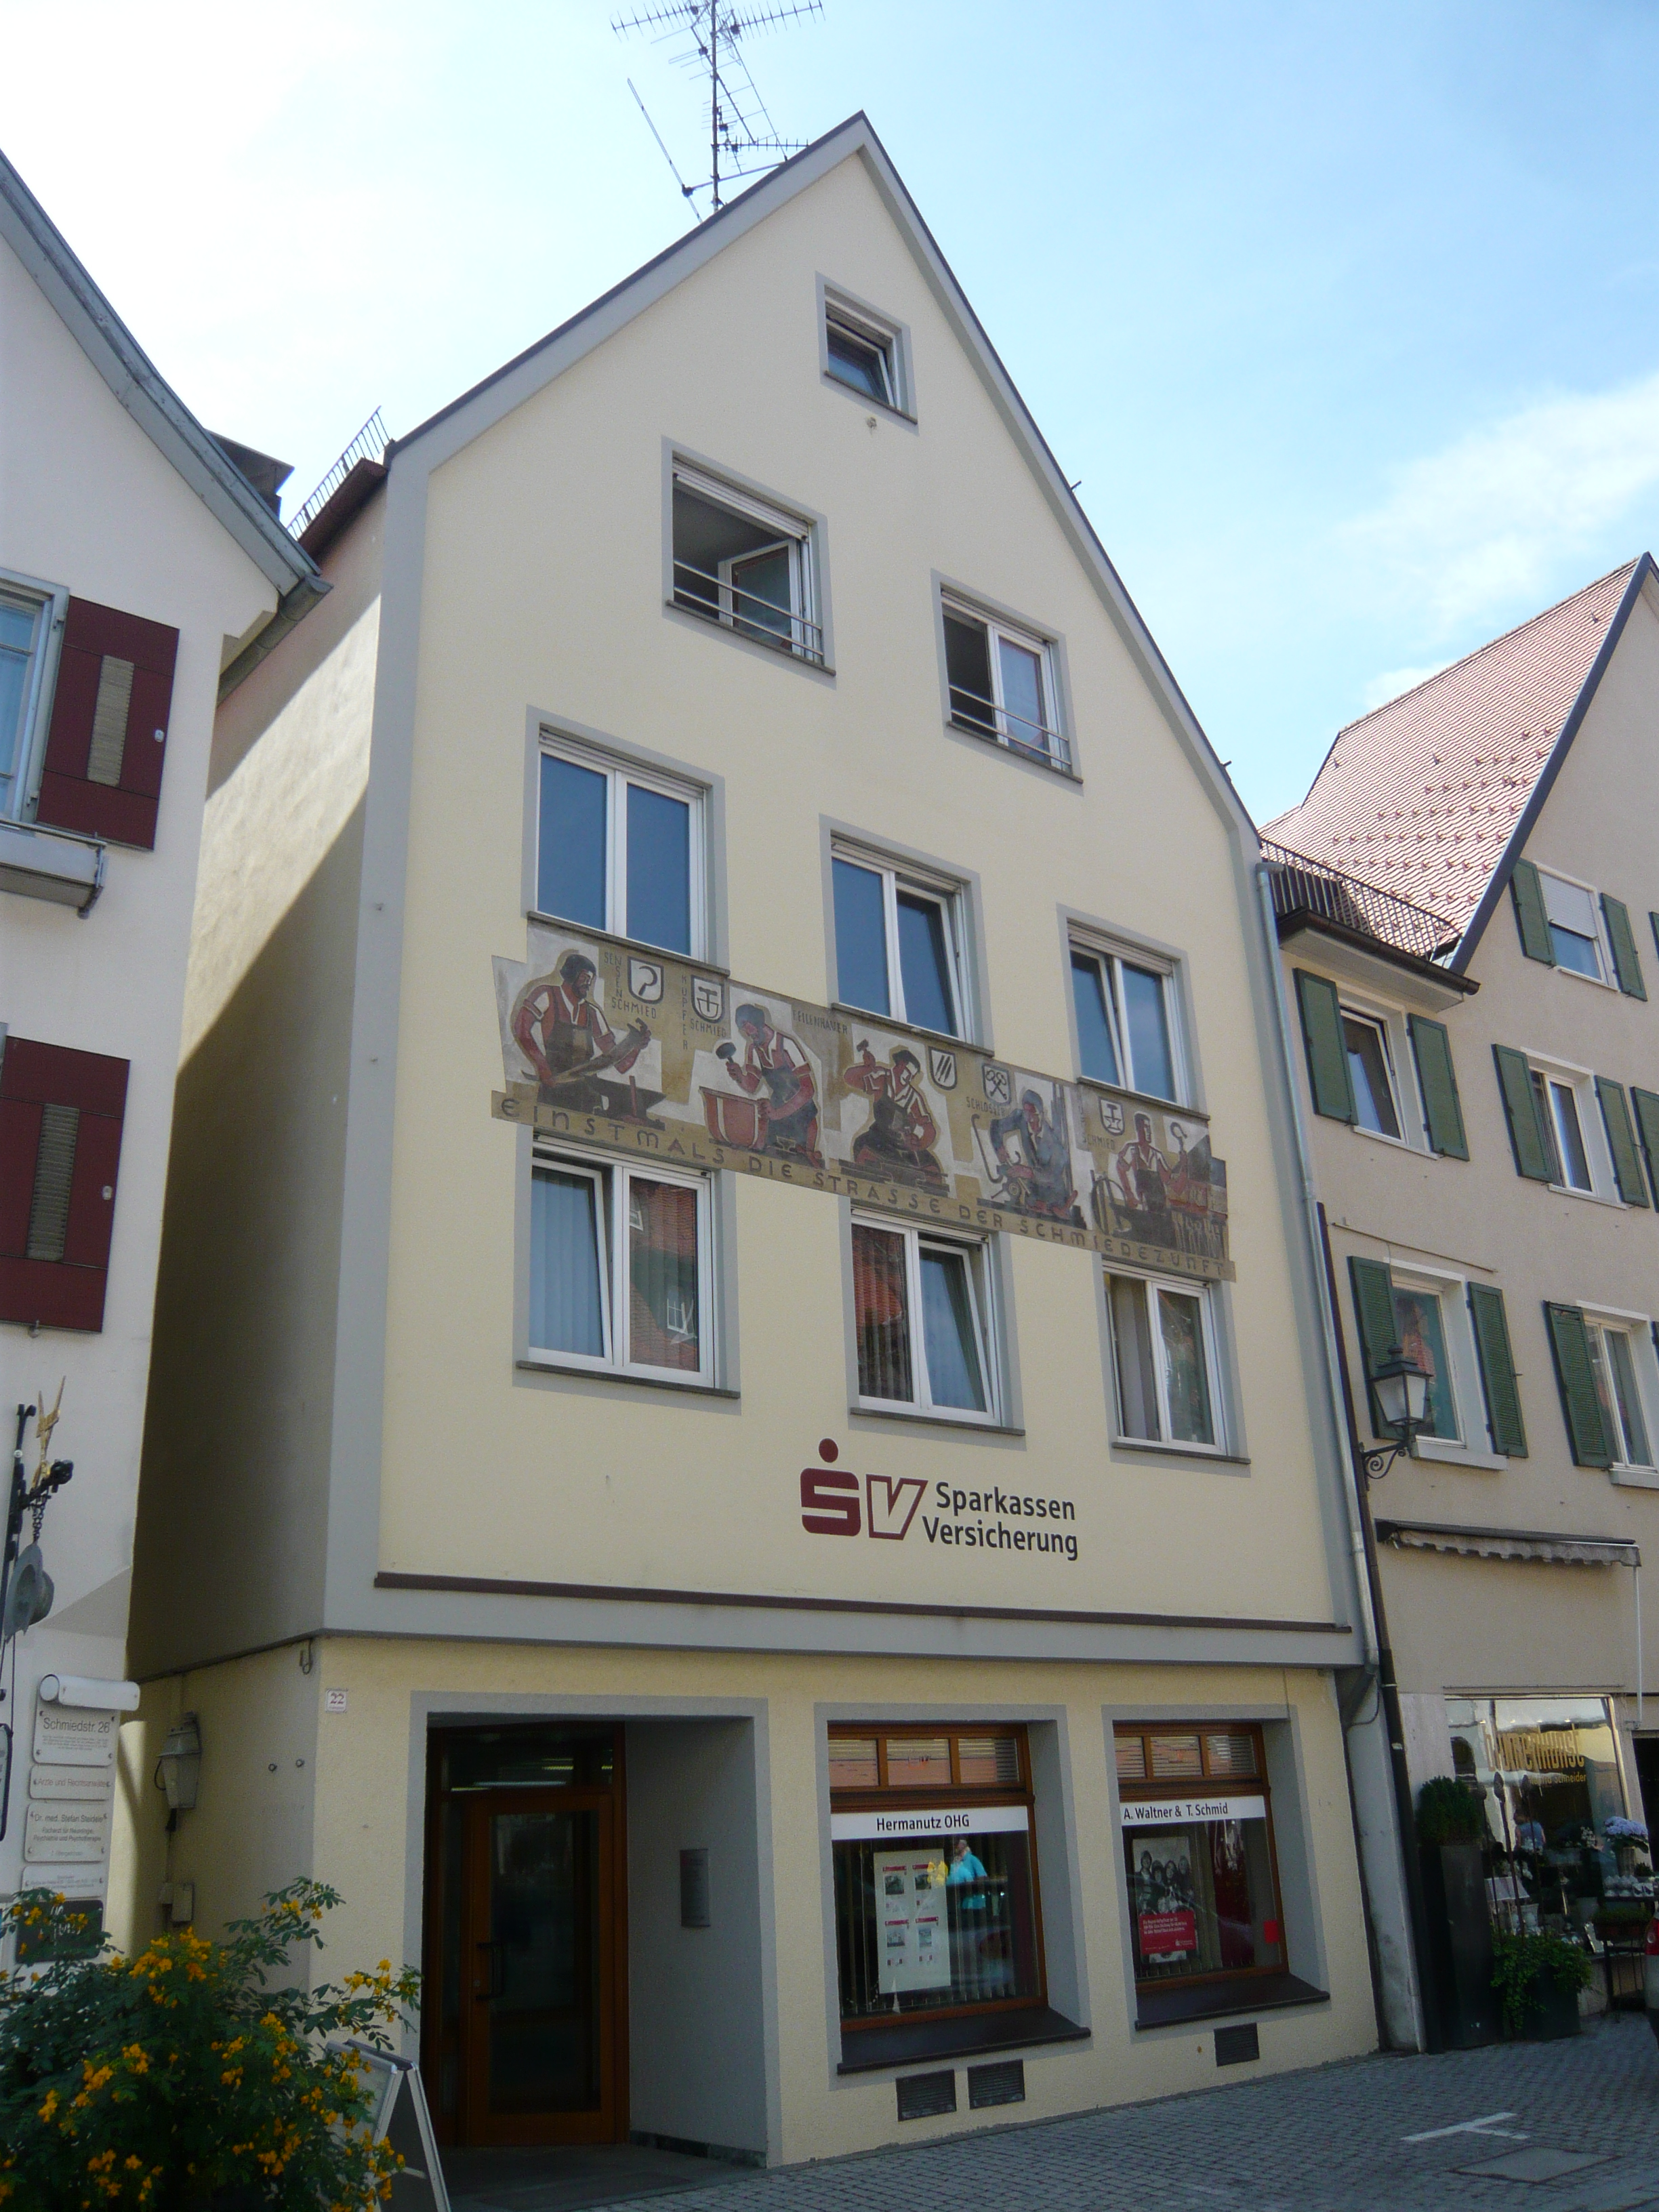 Wohn- und Geschäftshaus in der Fußgängerzone in Wangen/Allgäu